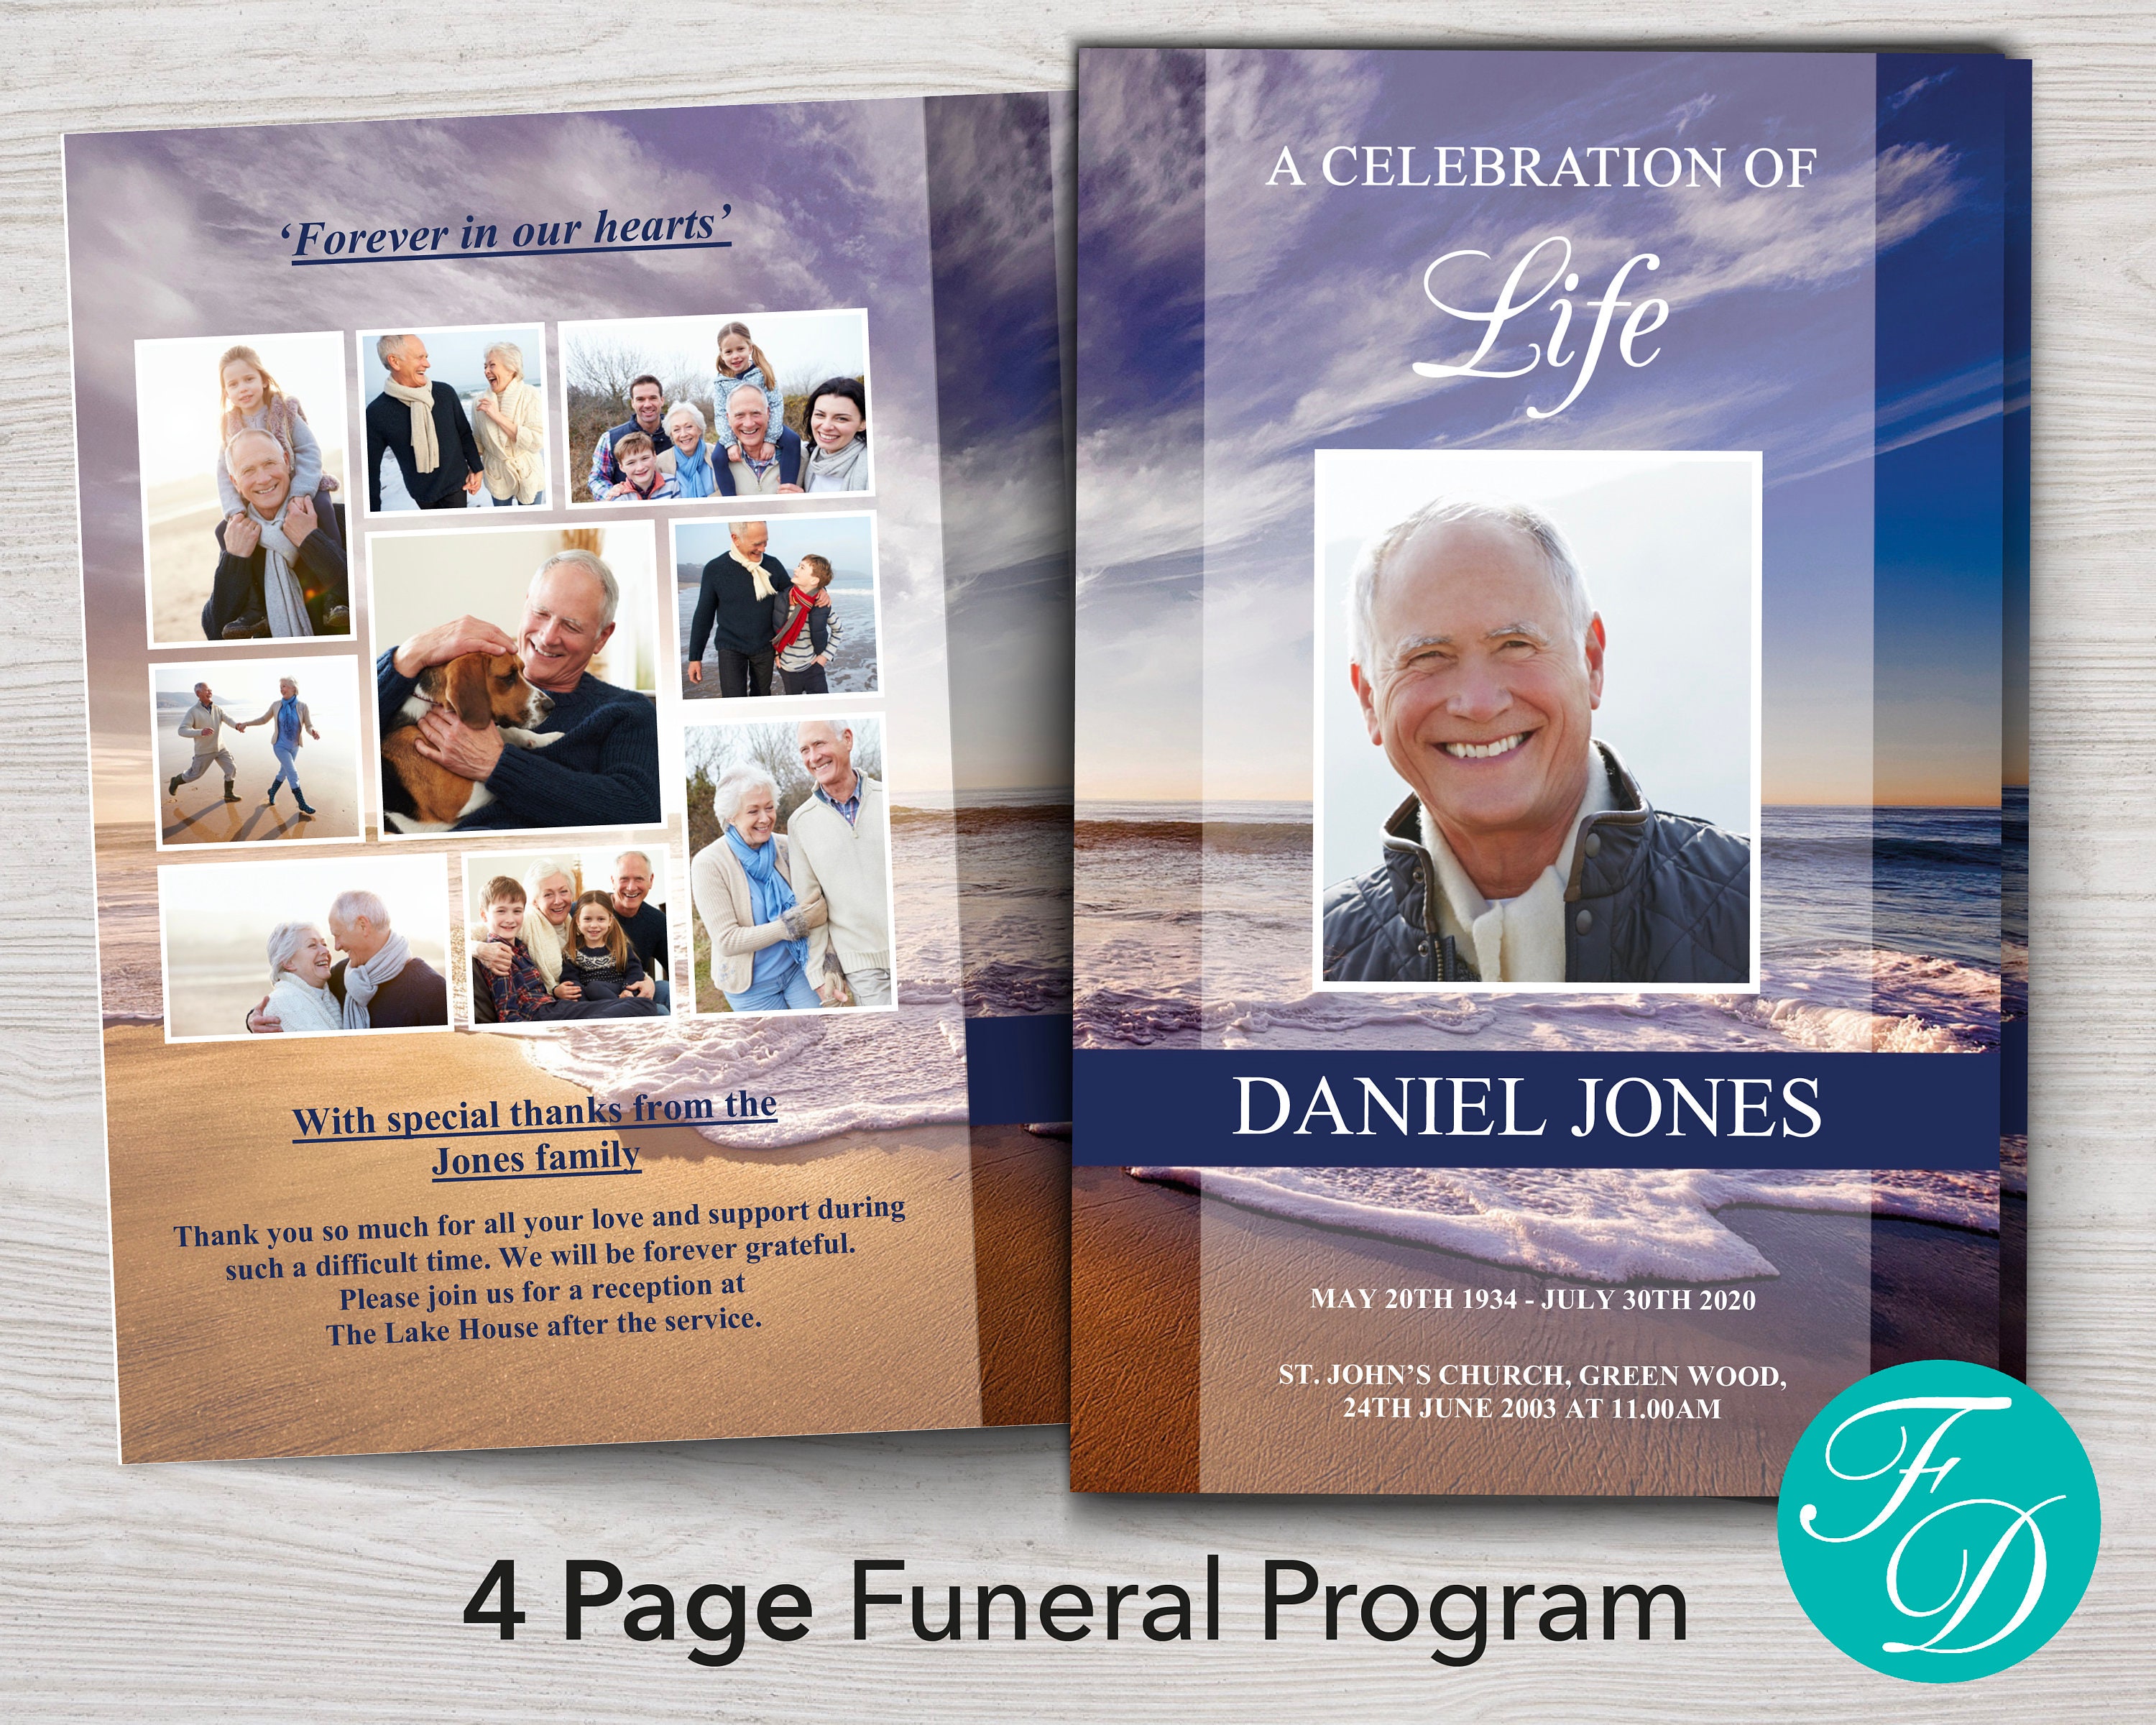 Funeral Program Template For Men Memorial Programs For Men Etsy